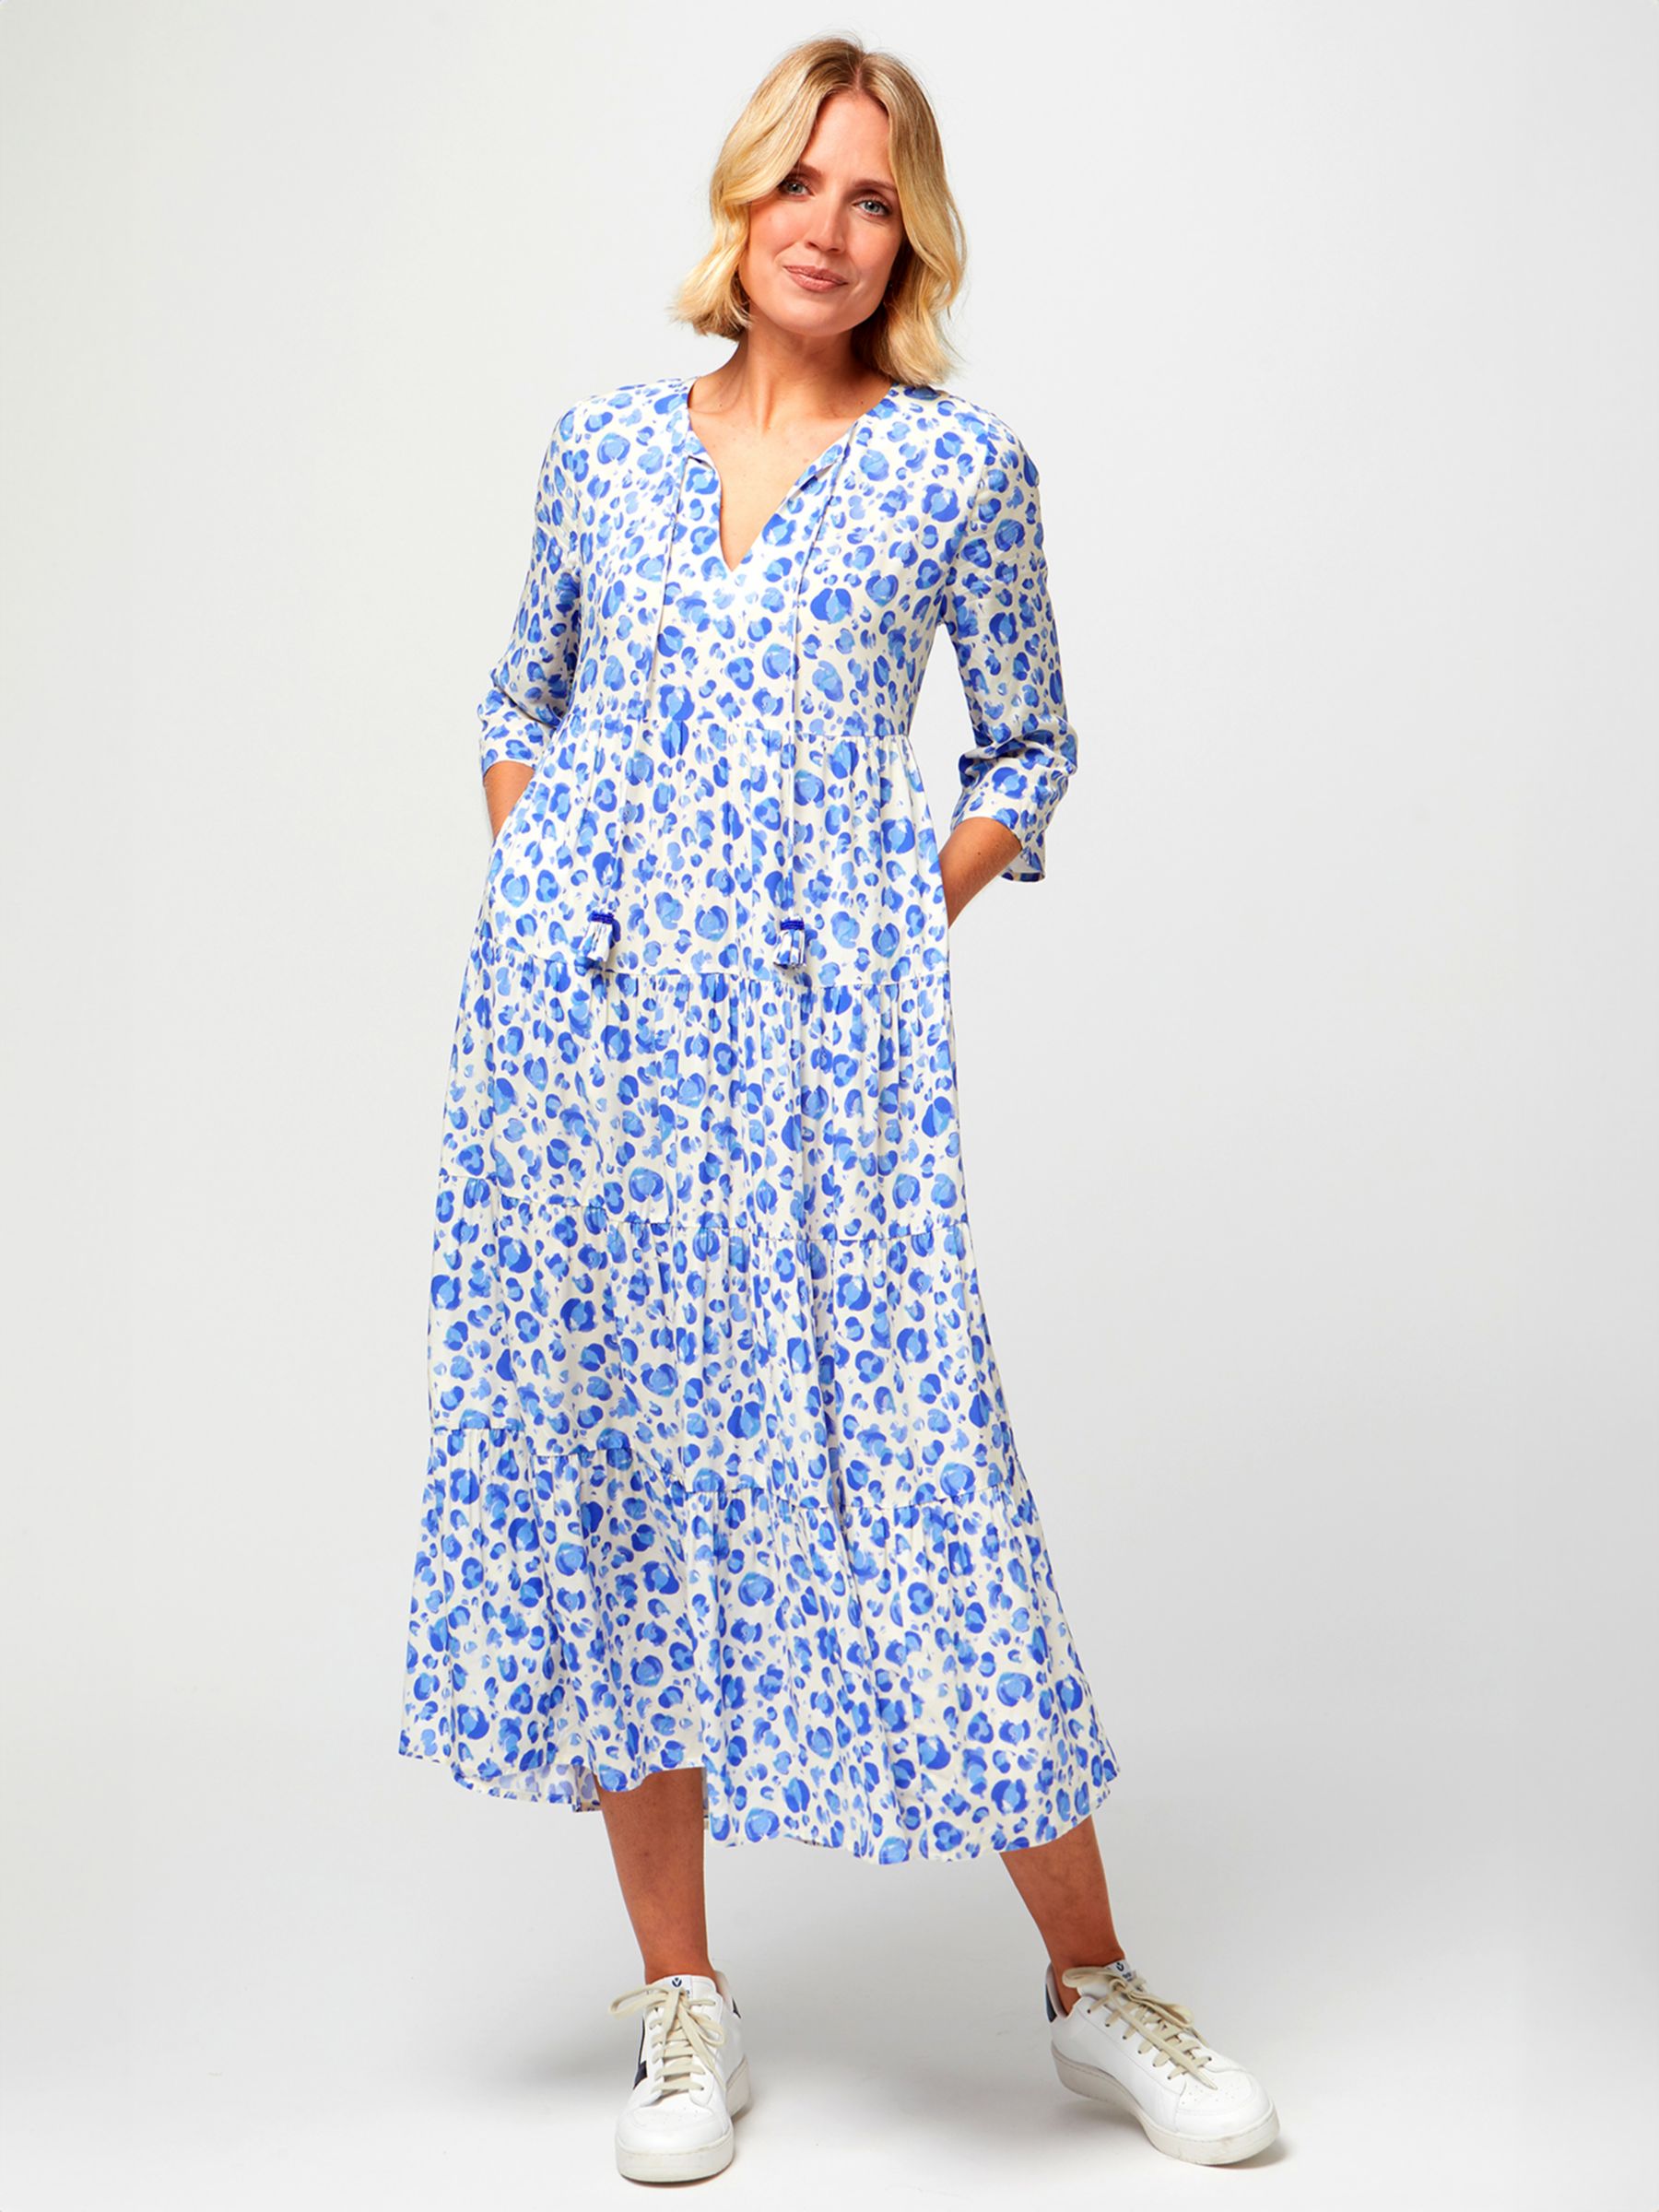 Aspiga Emma Cheetah Print Midi Dress, Cream/Blue, XXL